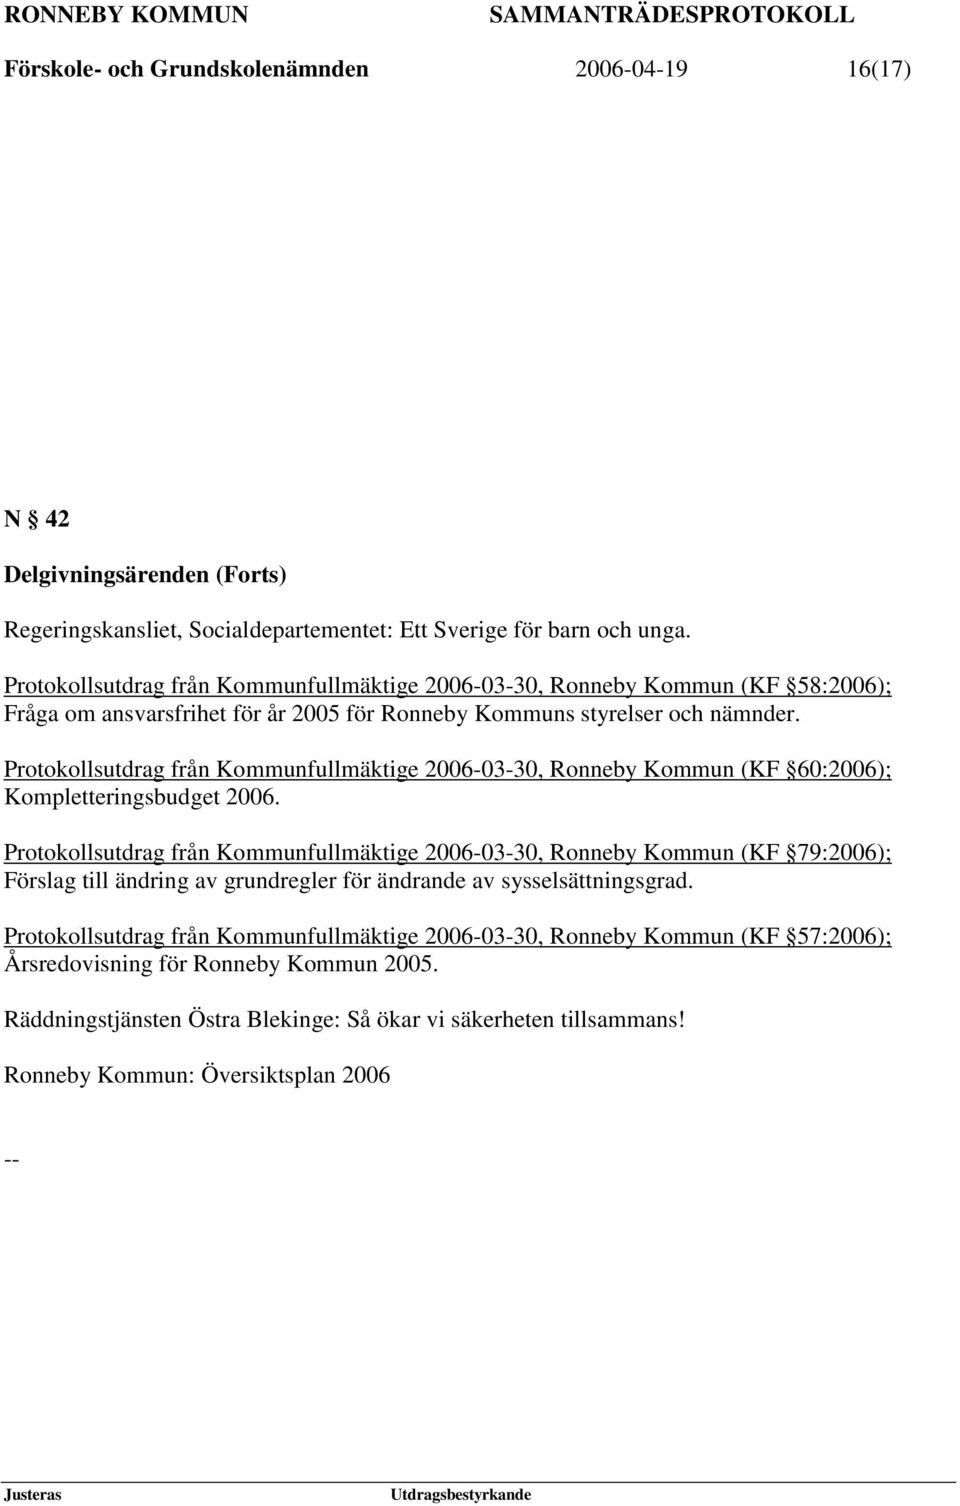 Protokollsutdrag från Kommunfullmäktige 2006-03-30, Ronneby Kommun (KF 60:2006); Kompletteringsbudget 2006.